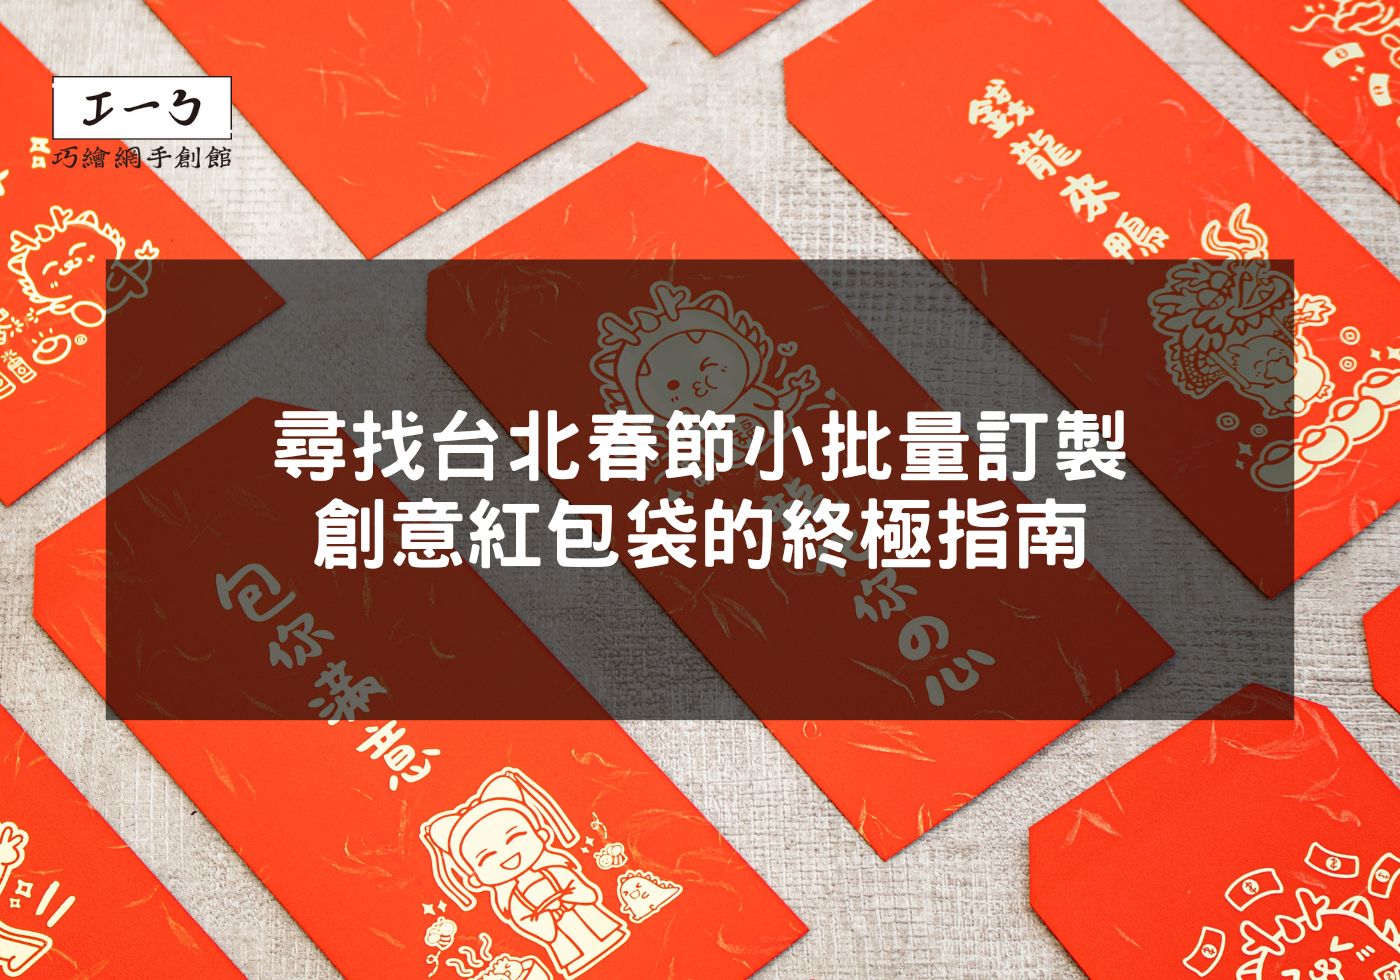 尋找台北春節小批量訂製創意紅包袋的終極指南